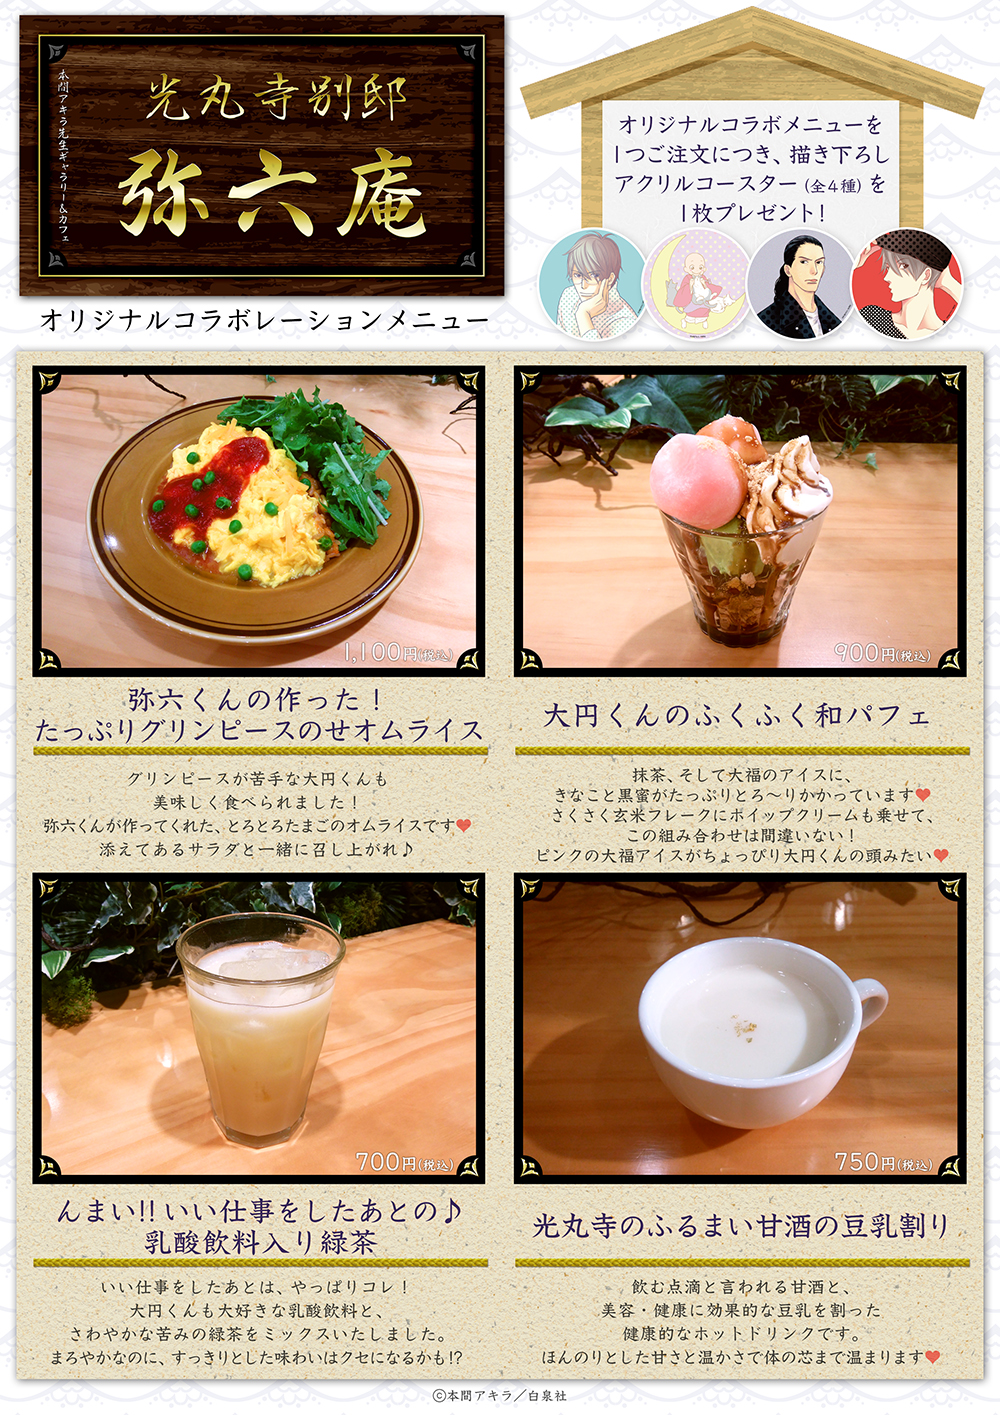 mirokuan_cafe_menu